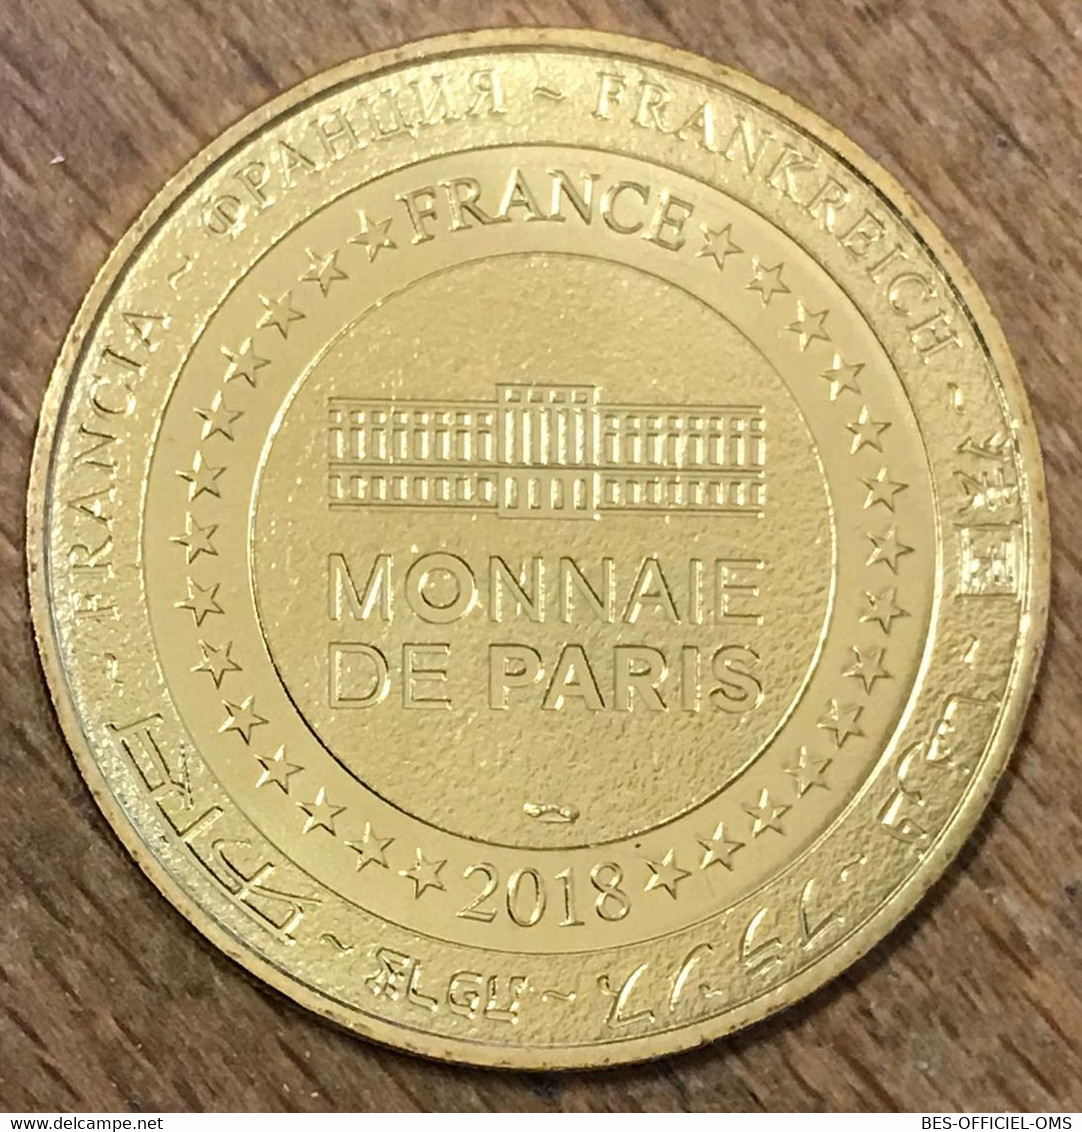 75007 PARIS NAPOLÉON MUSÉE DE L'ARMÉE MDP 2018 MÉDAILLE MONNAIE DE PARIS JETON TOURISTIQUE MEDALS COINS TOKENS - 2018